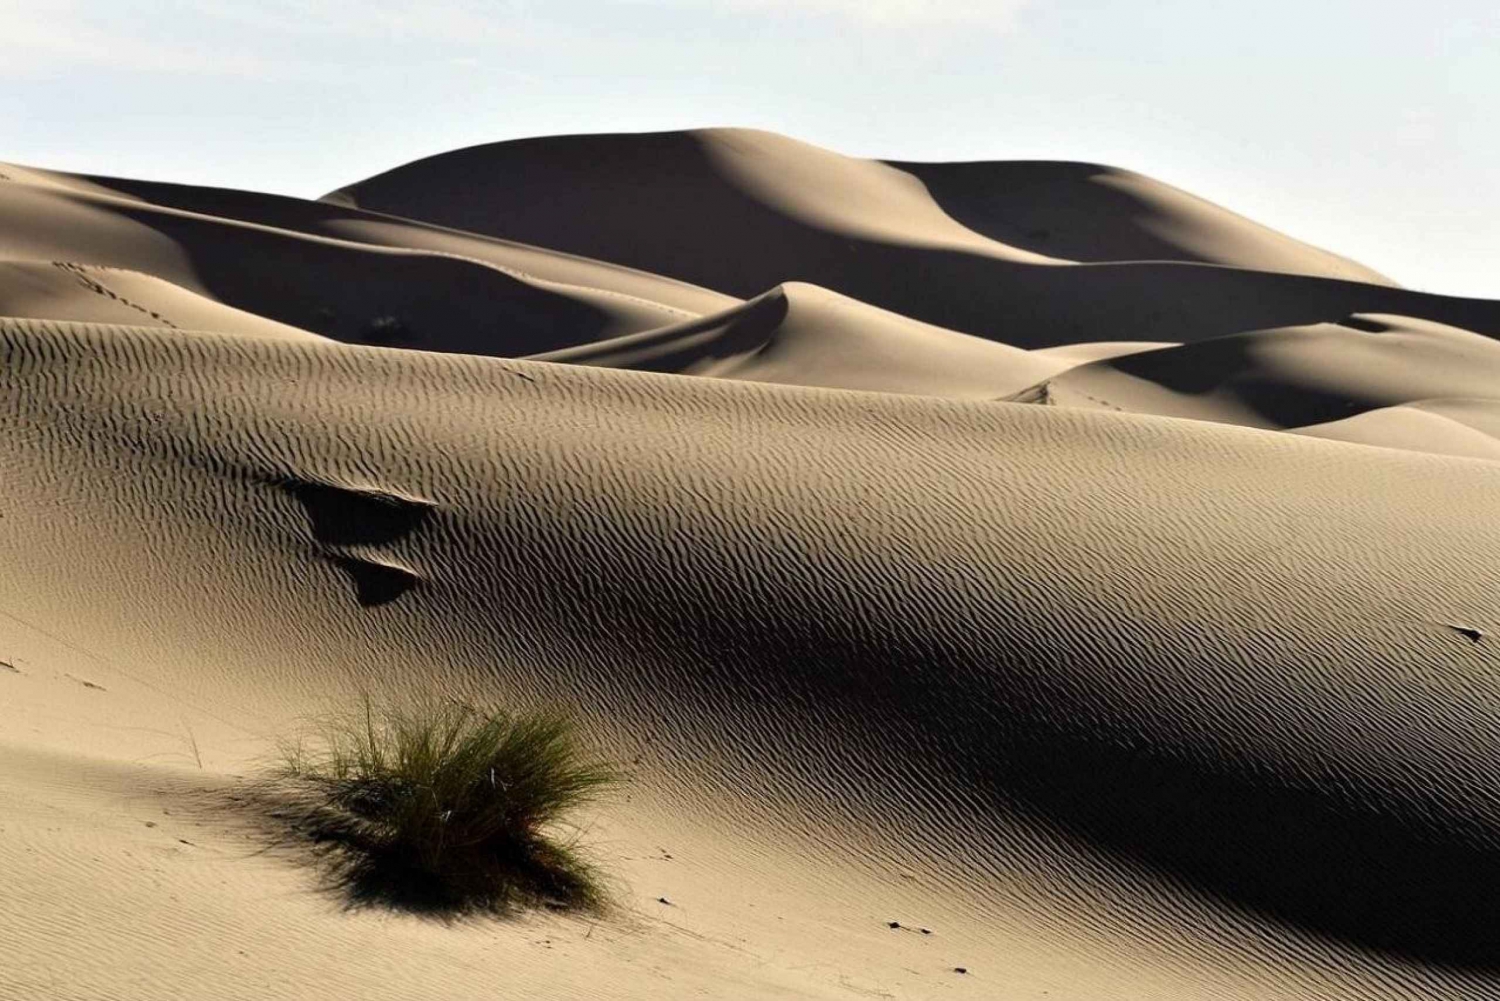 3 dagars ökenresa från Marrakech till Merzouga sanddyner och kamel